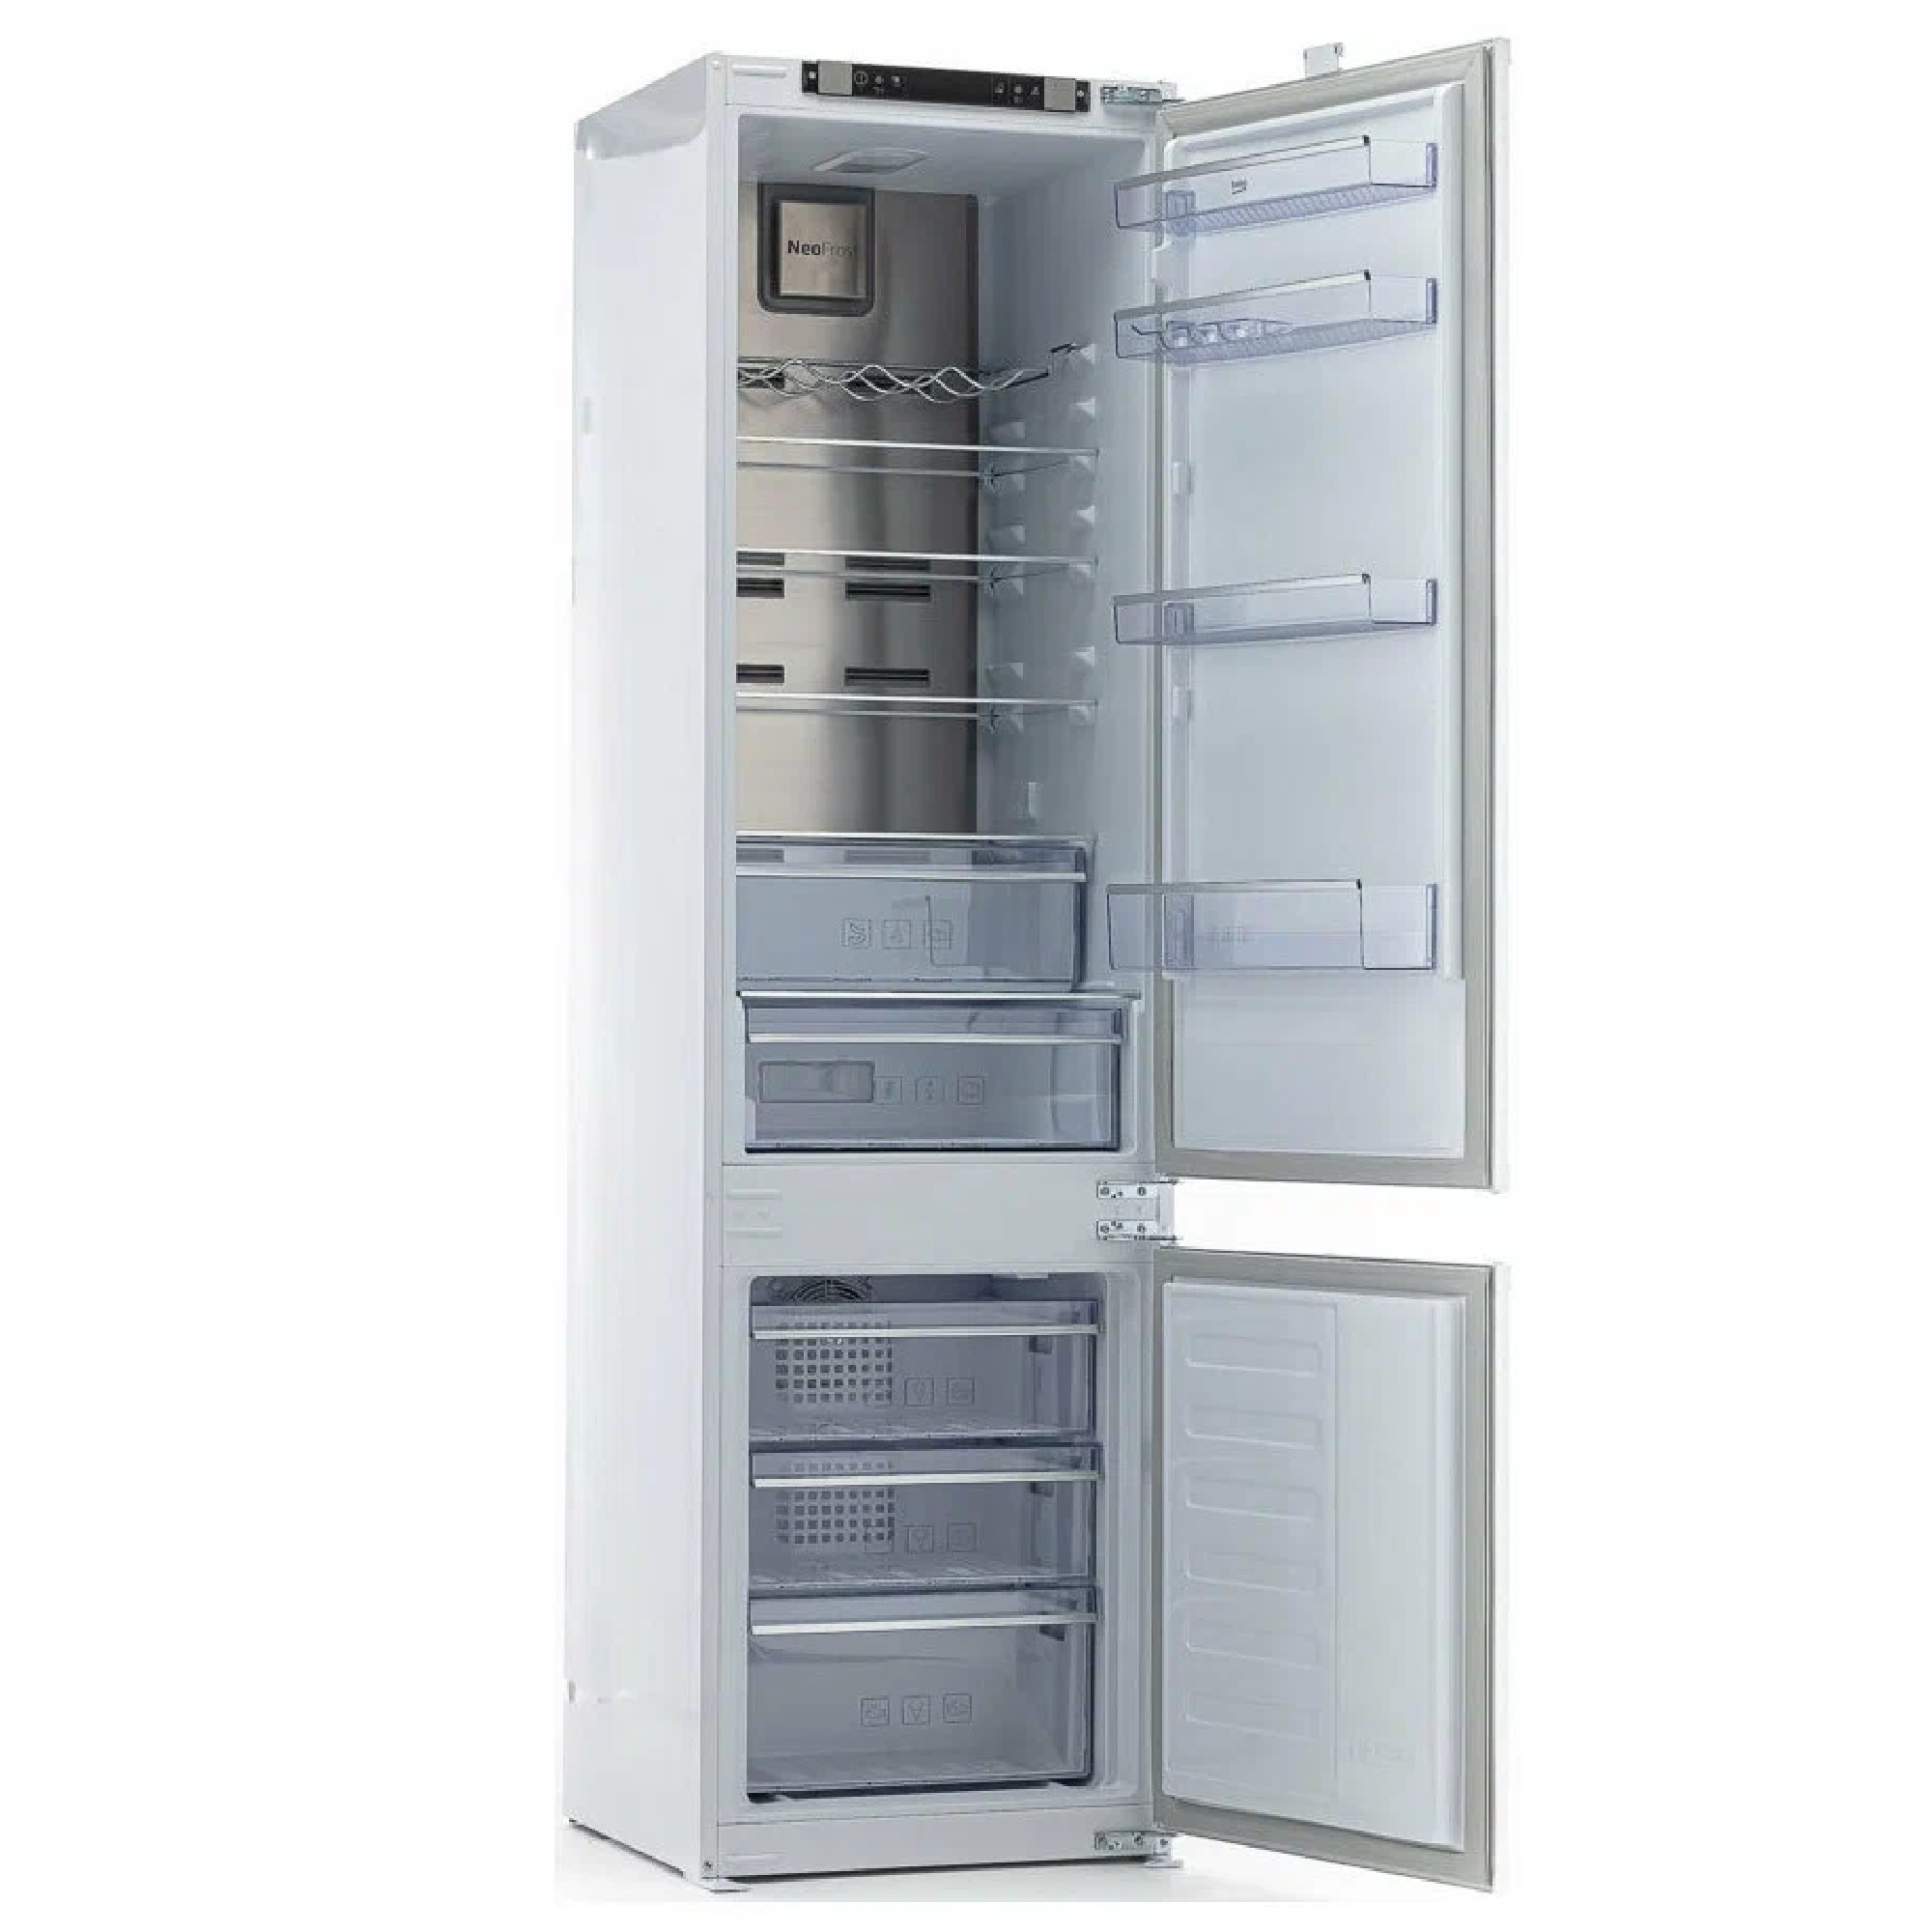 Встраиваемый холодильник beko bcna275e2s. Встраиваемый холодильник Beko bcna275e2s, белый. Встраиваемый холодильник Beko bcna306e2s. Холодильник Beko bcna275e2s схема встраивания. Встраиваемый холодильник Beko bcna275e2s схема встраивания.